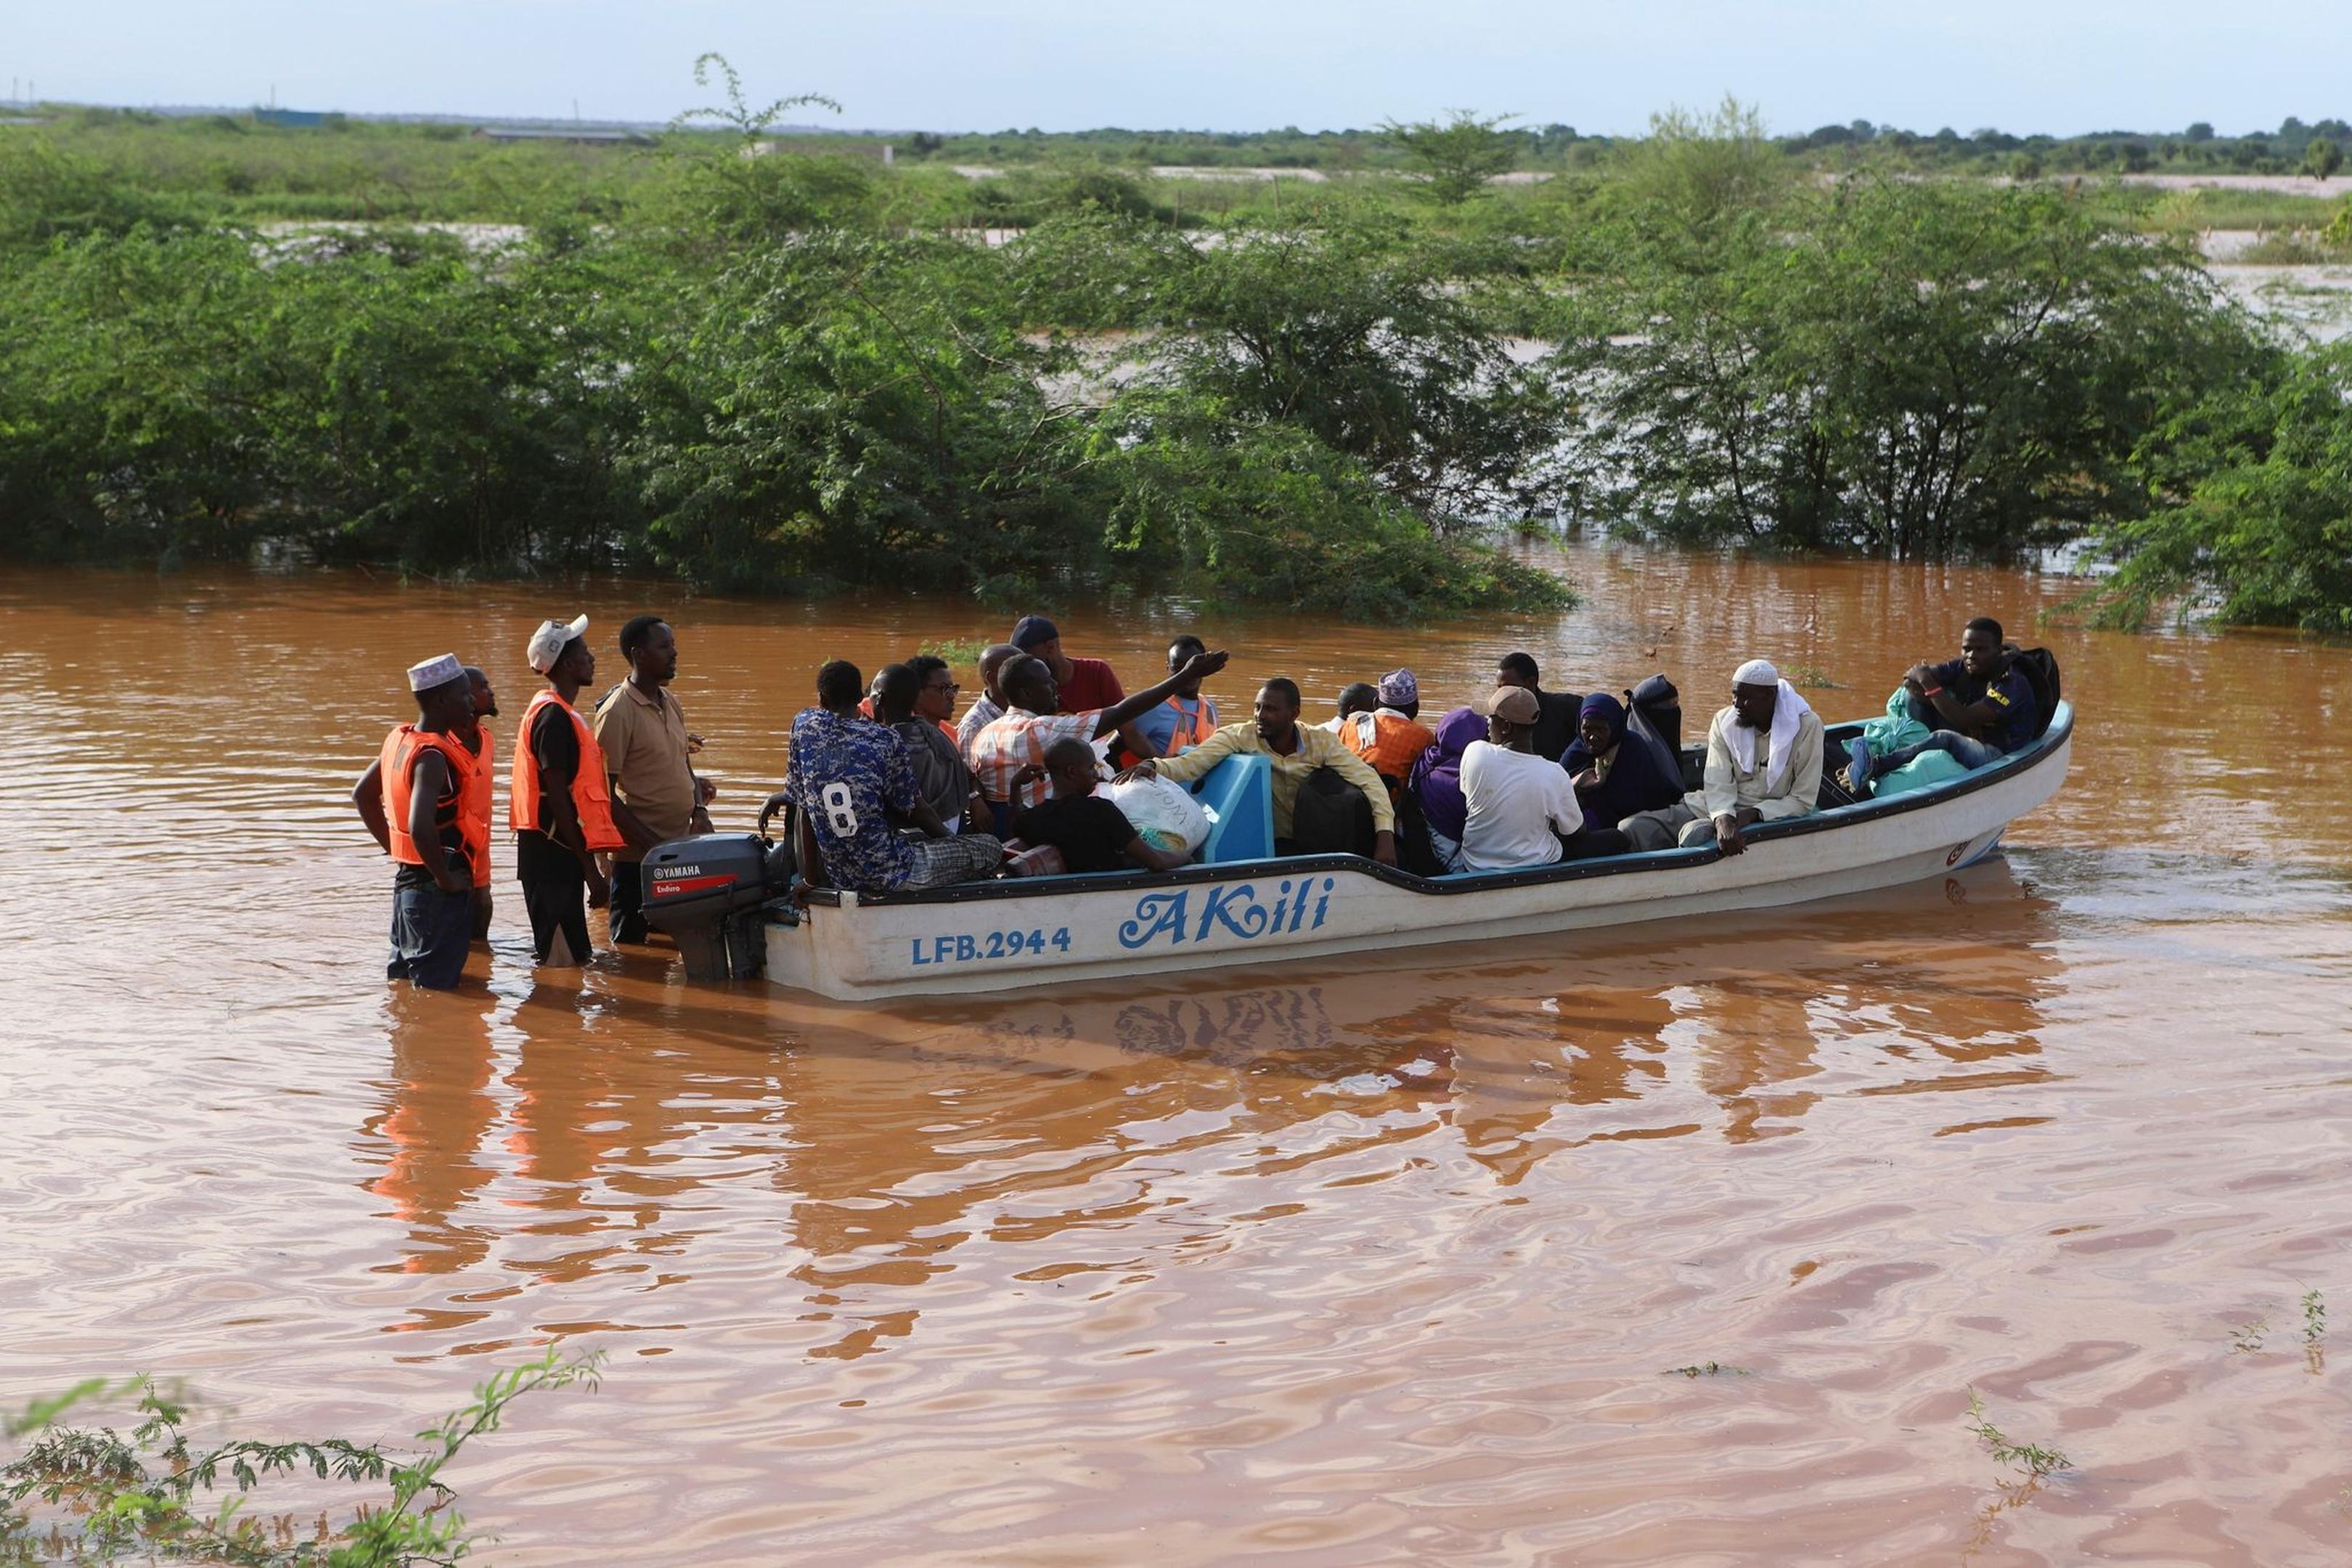 Kenia wird seit Mitte März von heftigen Regenfällen heimgesucht.